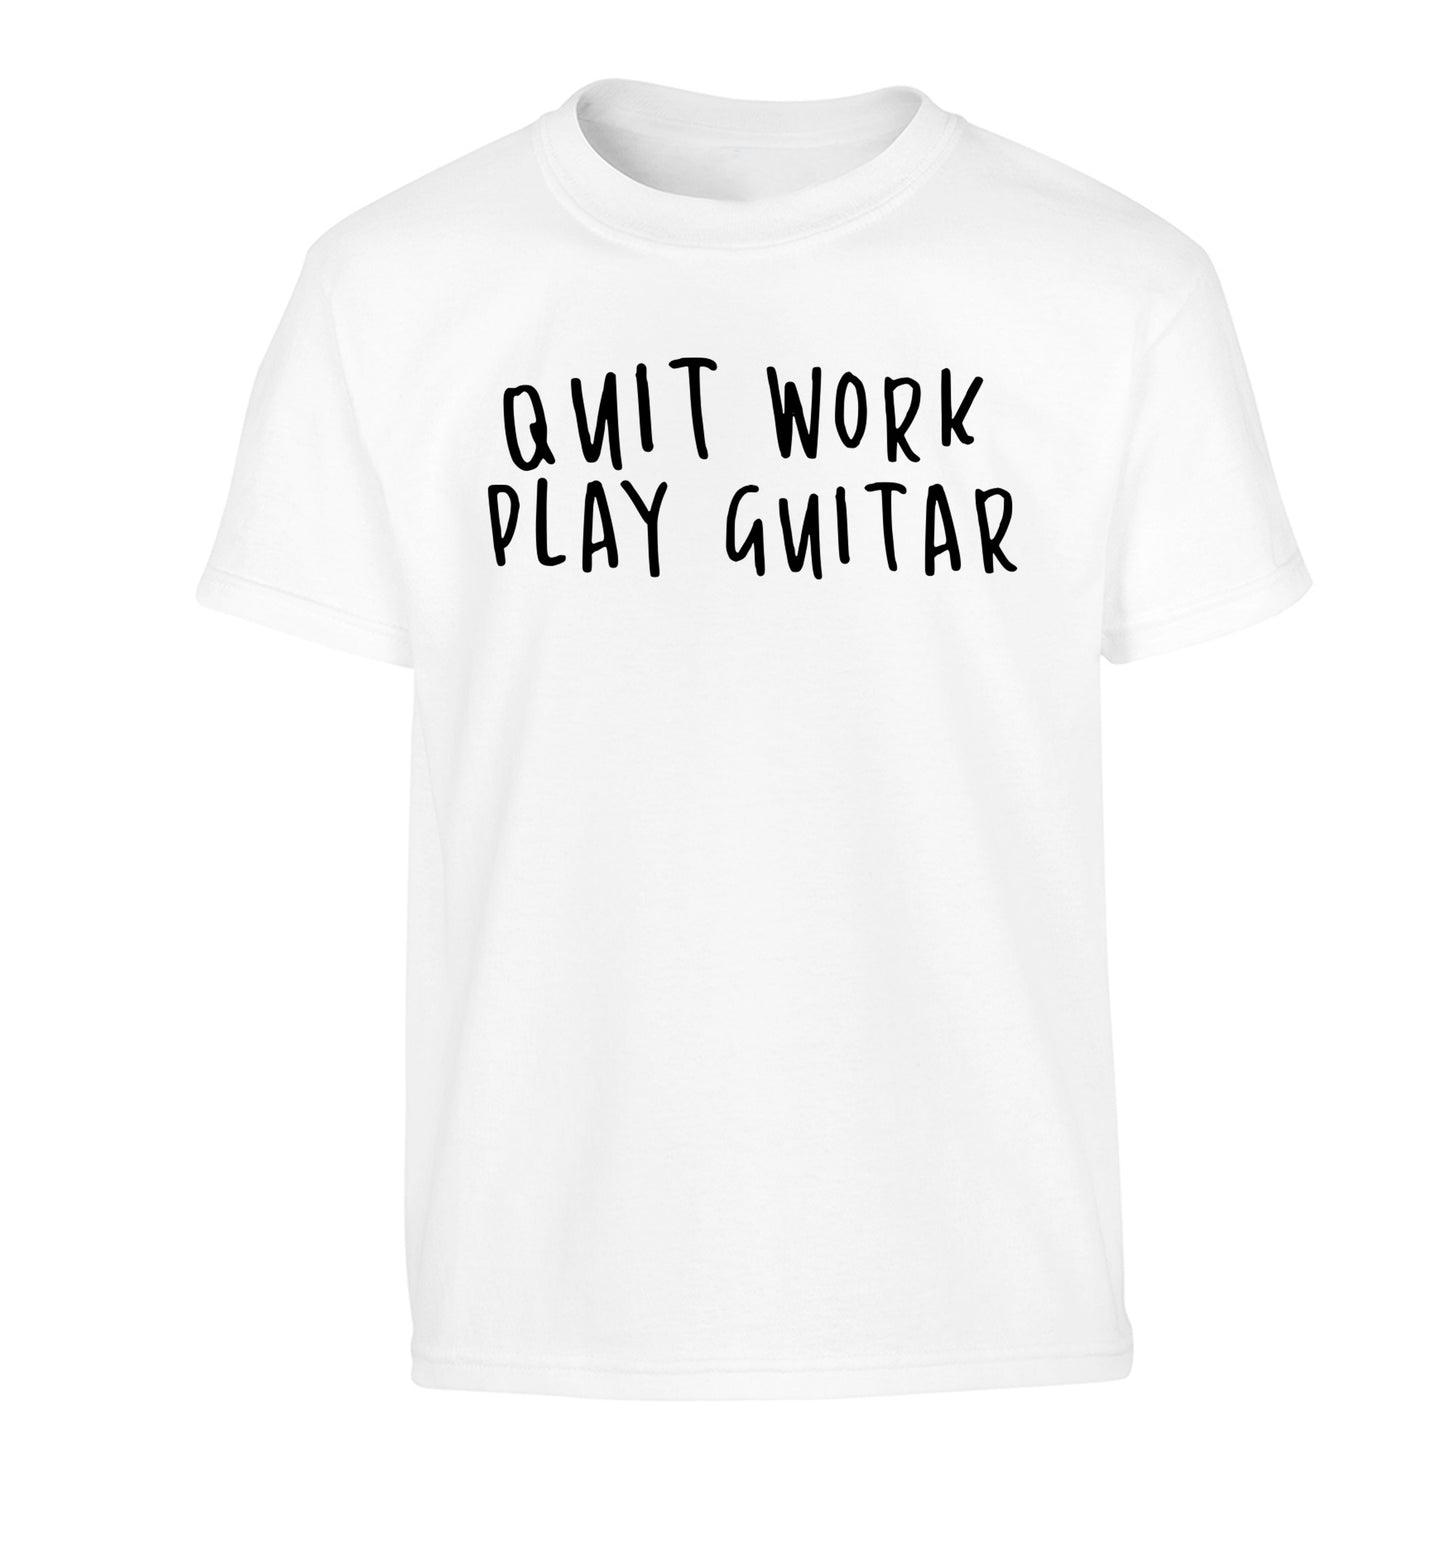 Quit work play guitar Children's white Tshirt 12-14 Years